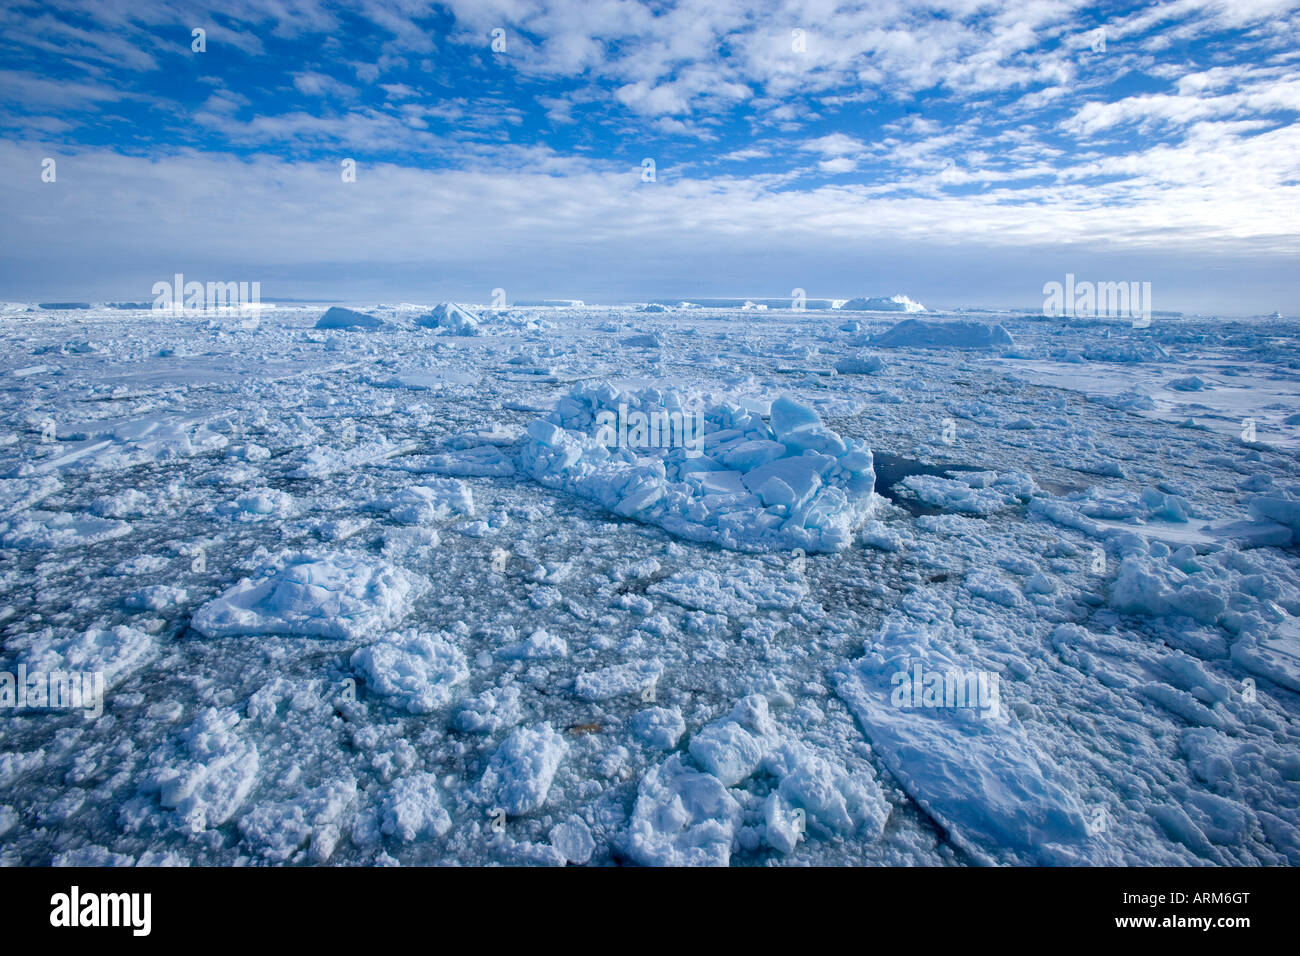 La banquise et les icebergs, péninsule antarctique, mer de Weddell, l'Antarctique, régions polaires Banque D'Images